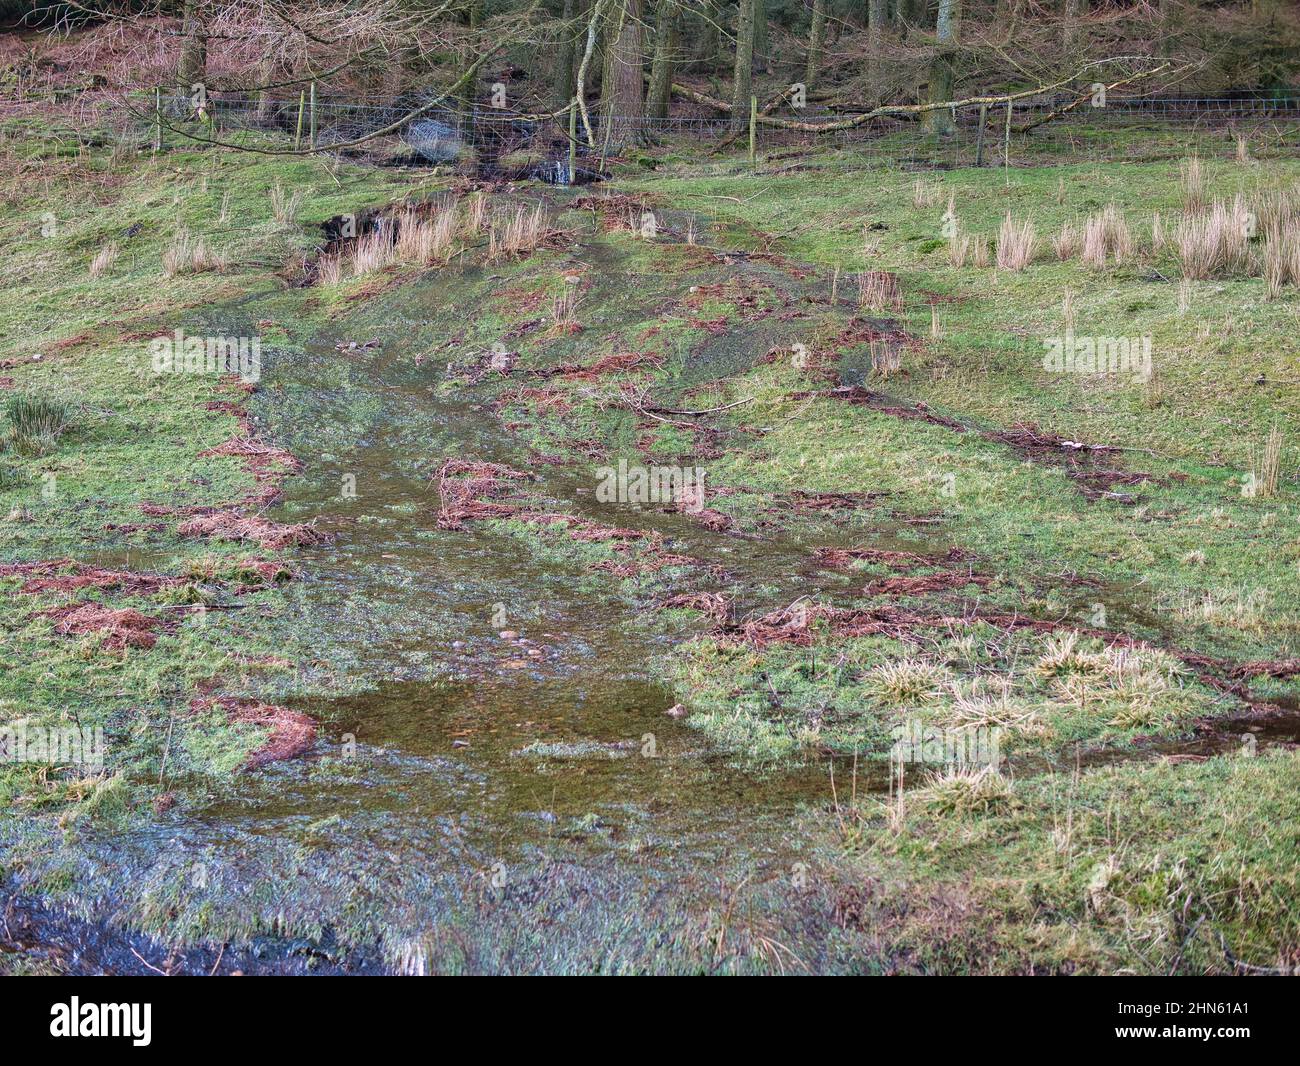 Acqua che scorre su terra satura dopo pioggia pesante. Preso in una zona rurale dell'Inghilterra del nord. Foto Stock